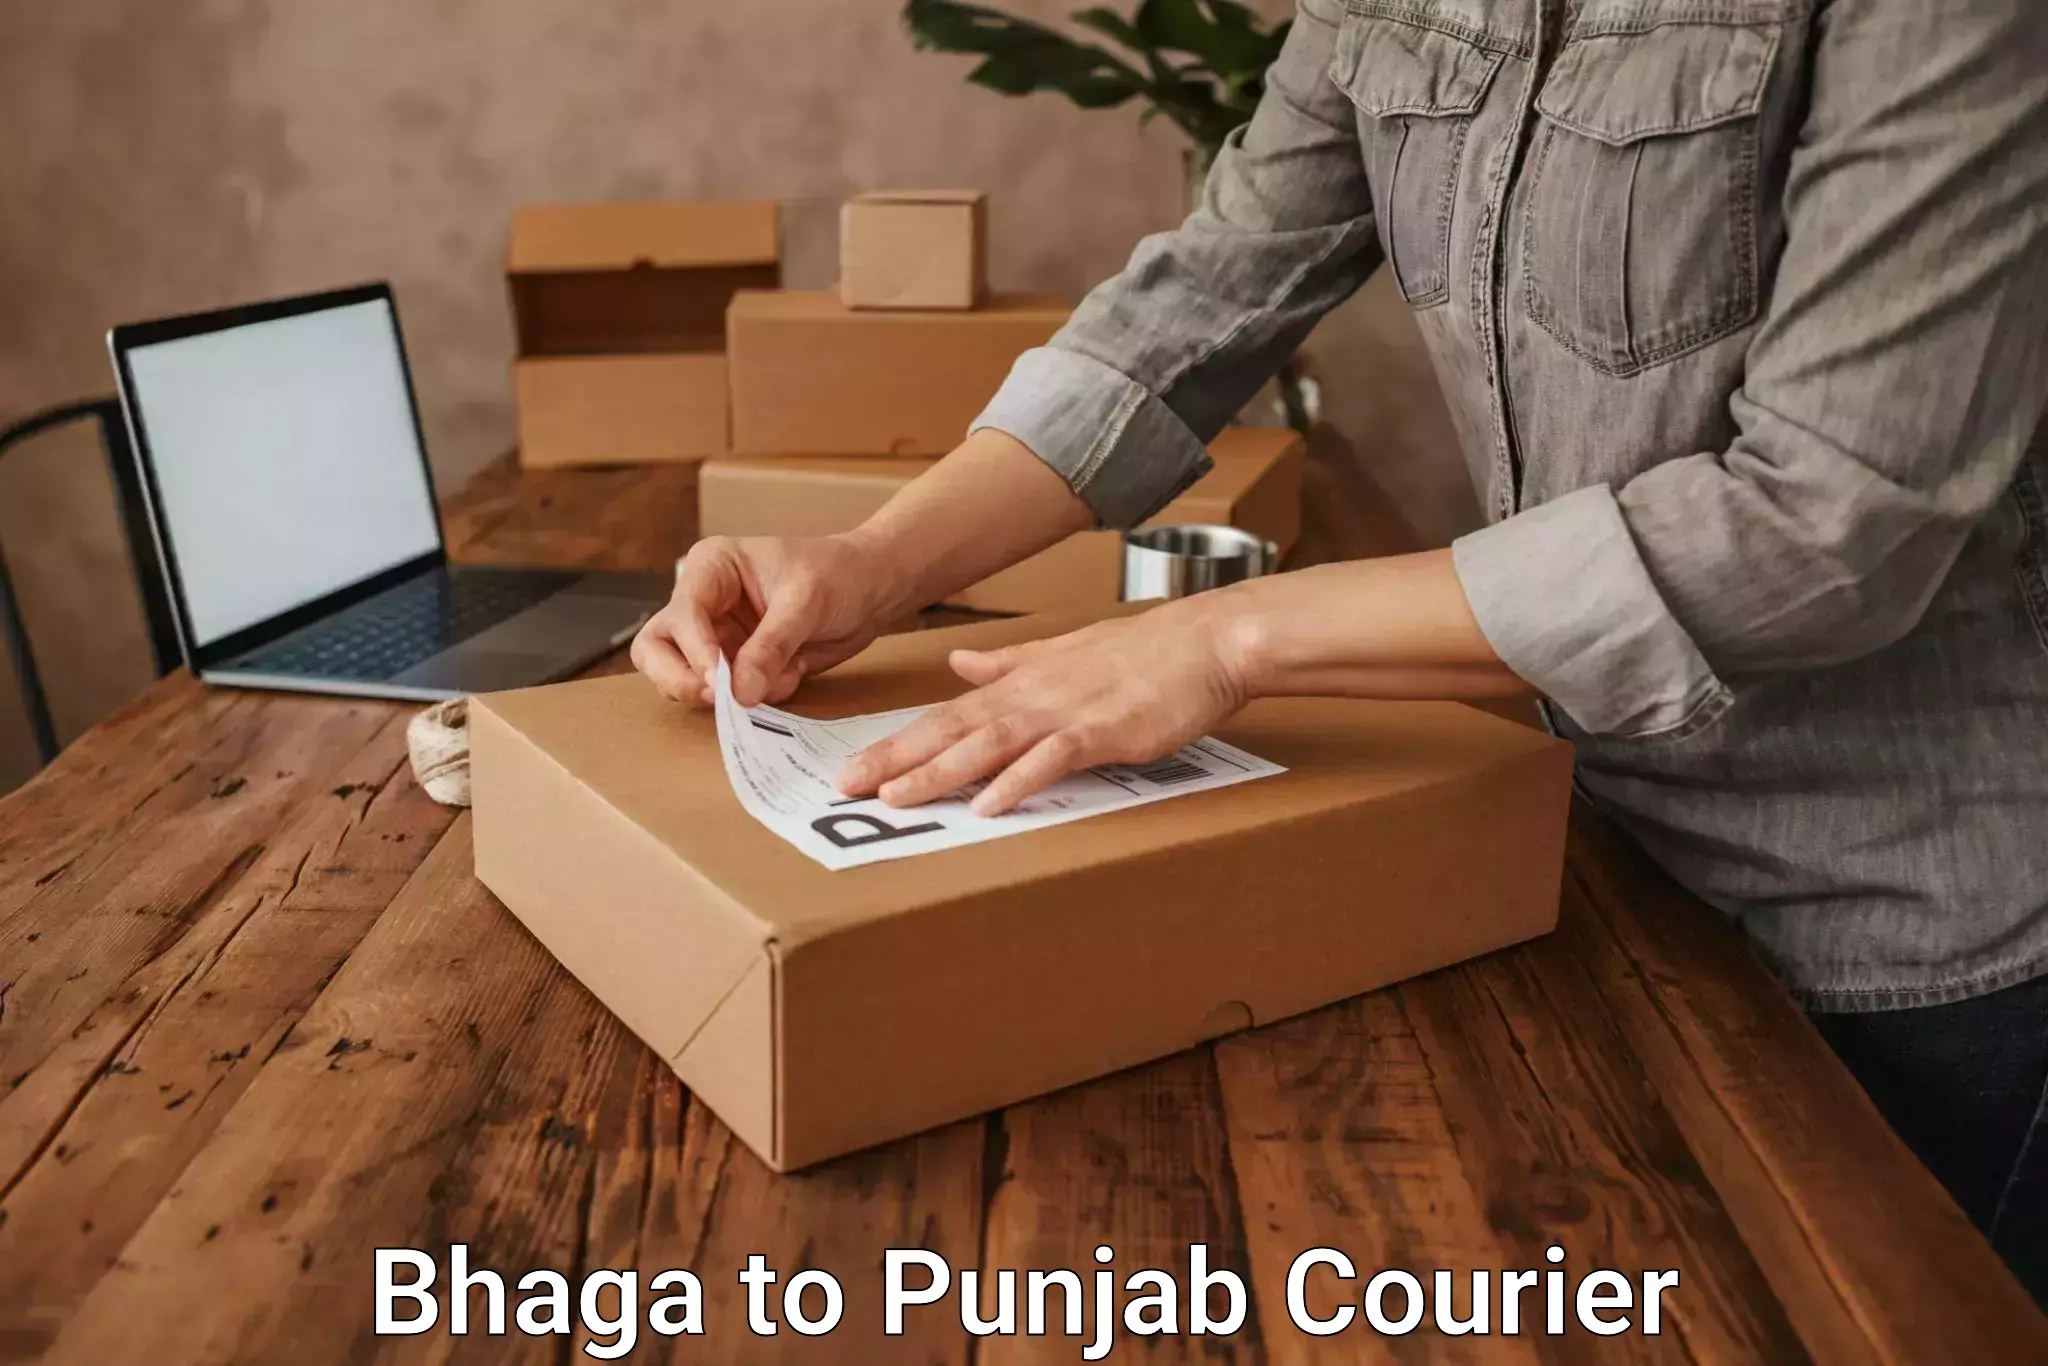 Premium courier solutions Bhaga to Punjab